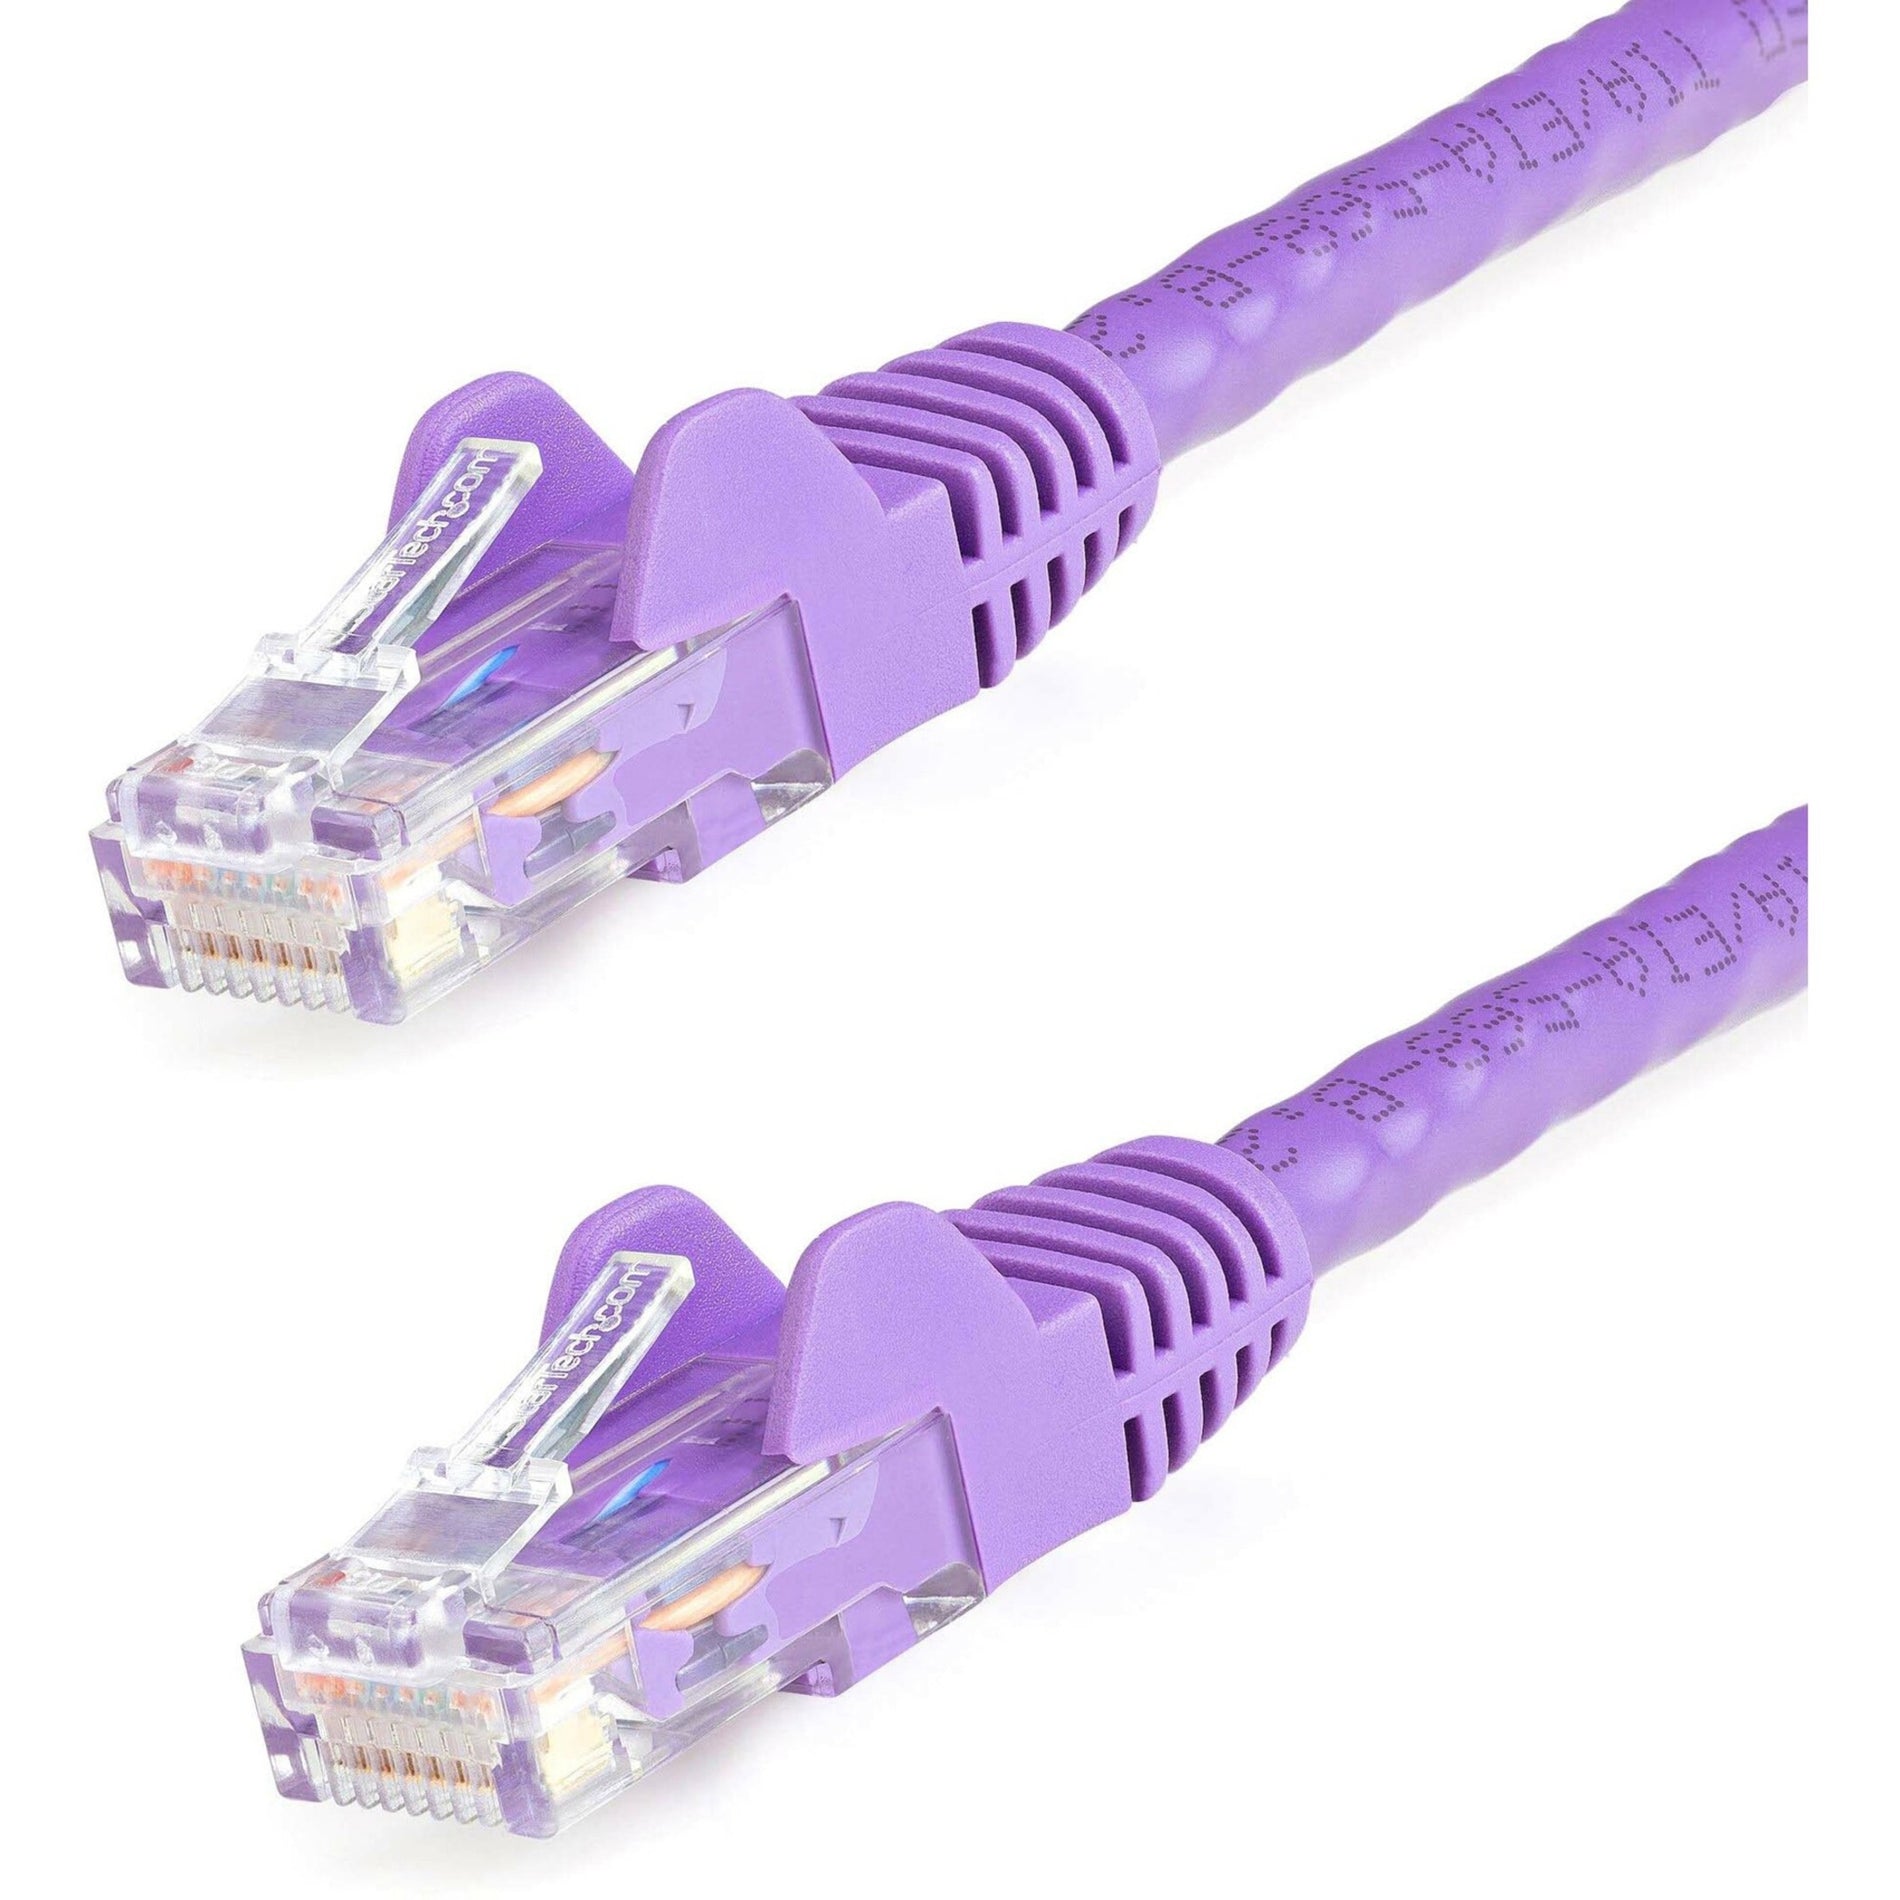 StarTech.com N6PATCH14PL Cat6 Patch Cable, 14ft Purple Ethernet Cable, Snagless RJ45 Connectors